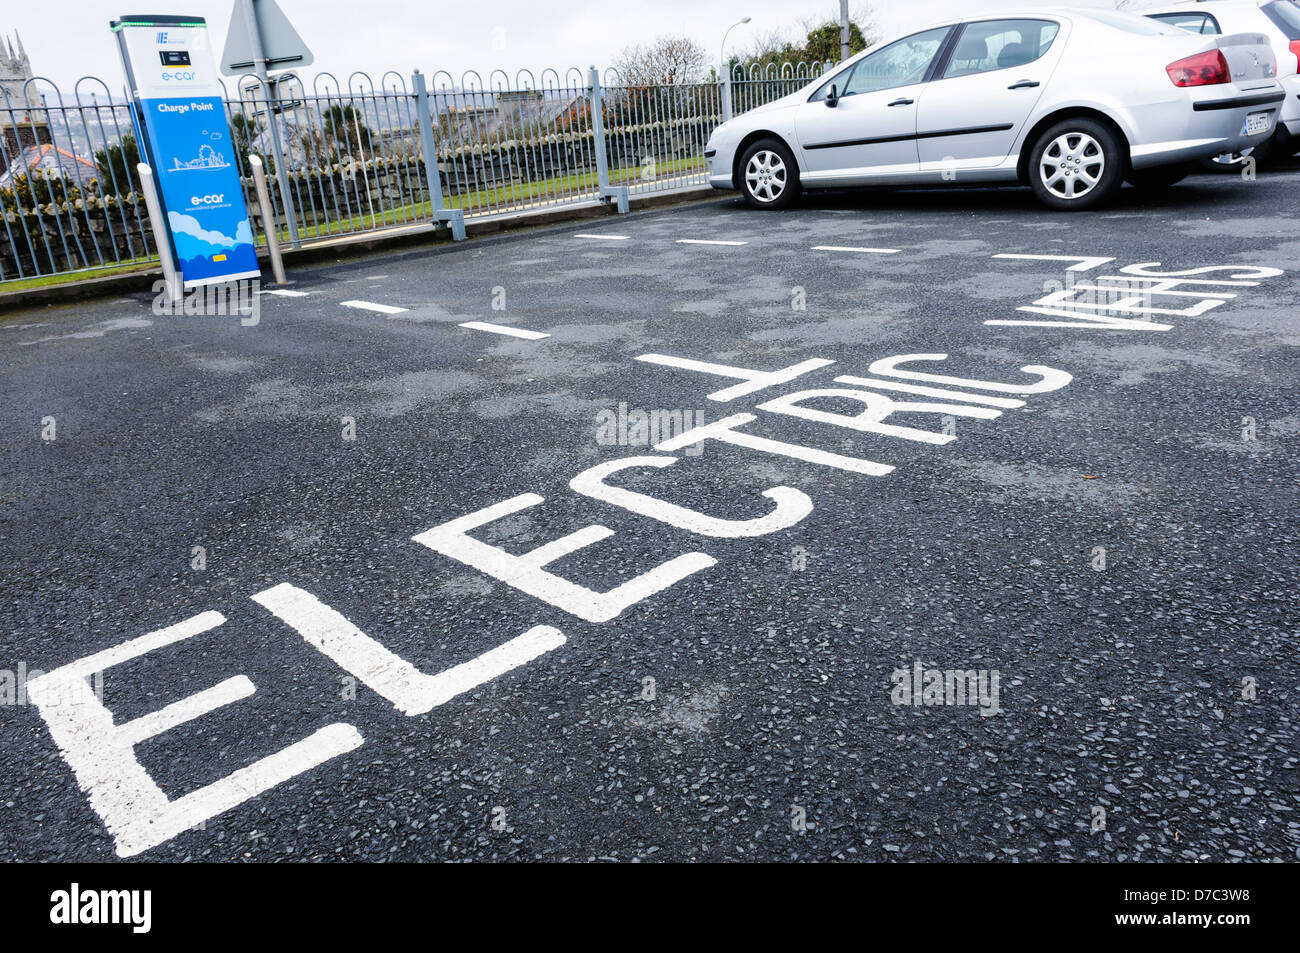 Parkplätze reserviert für Elektrofahrzeuge neben eine Ladestation  Stockfotografie - Alamy